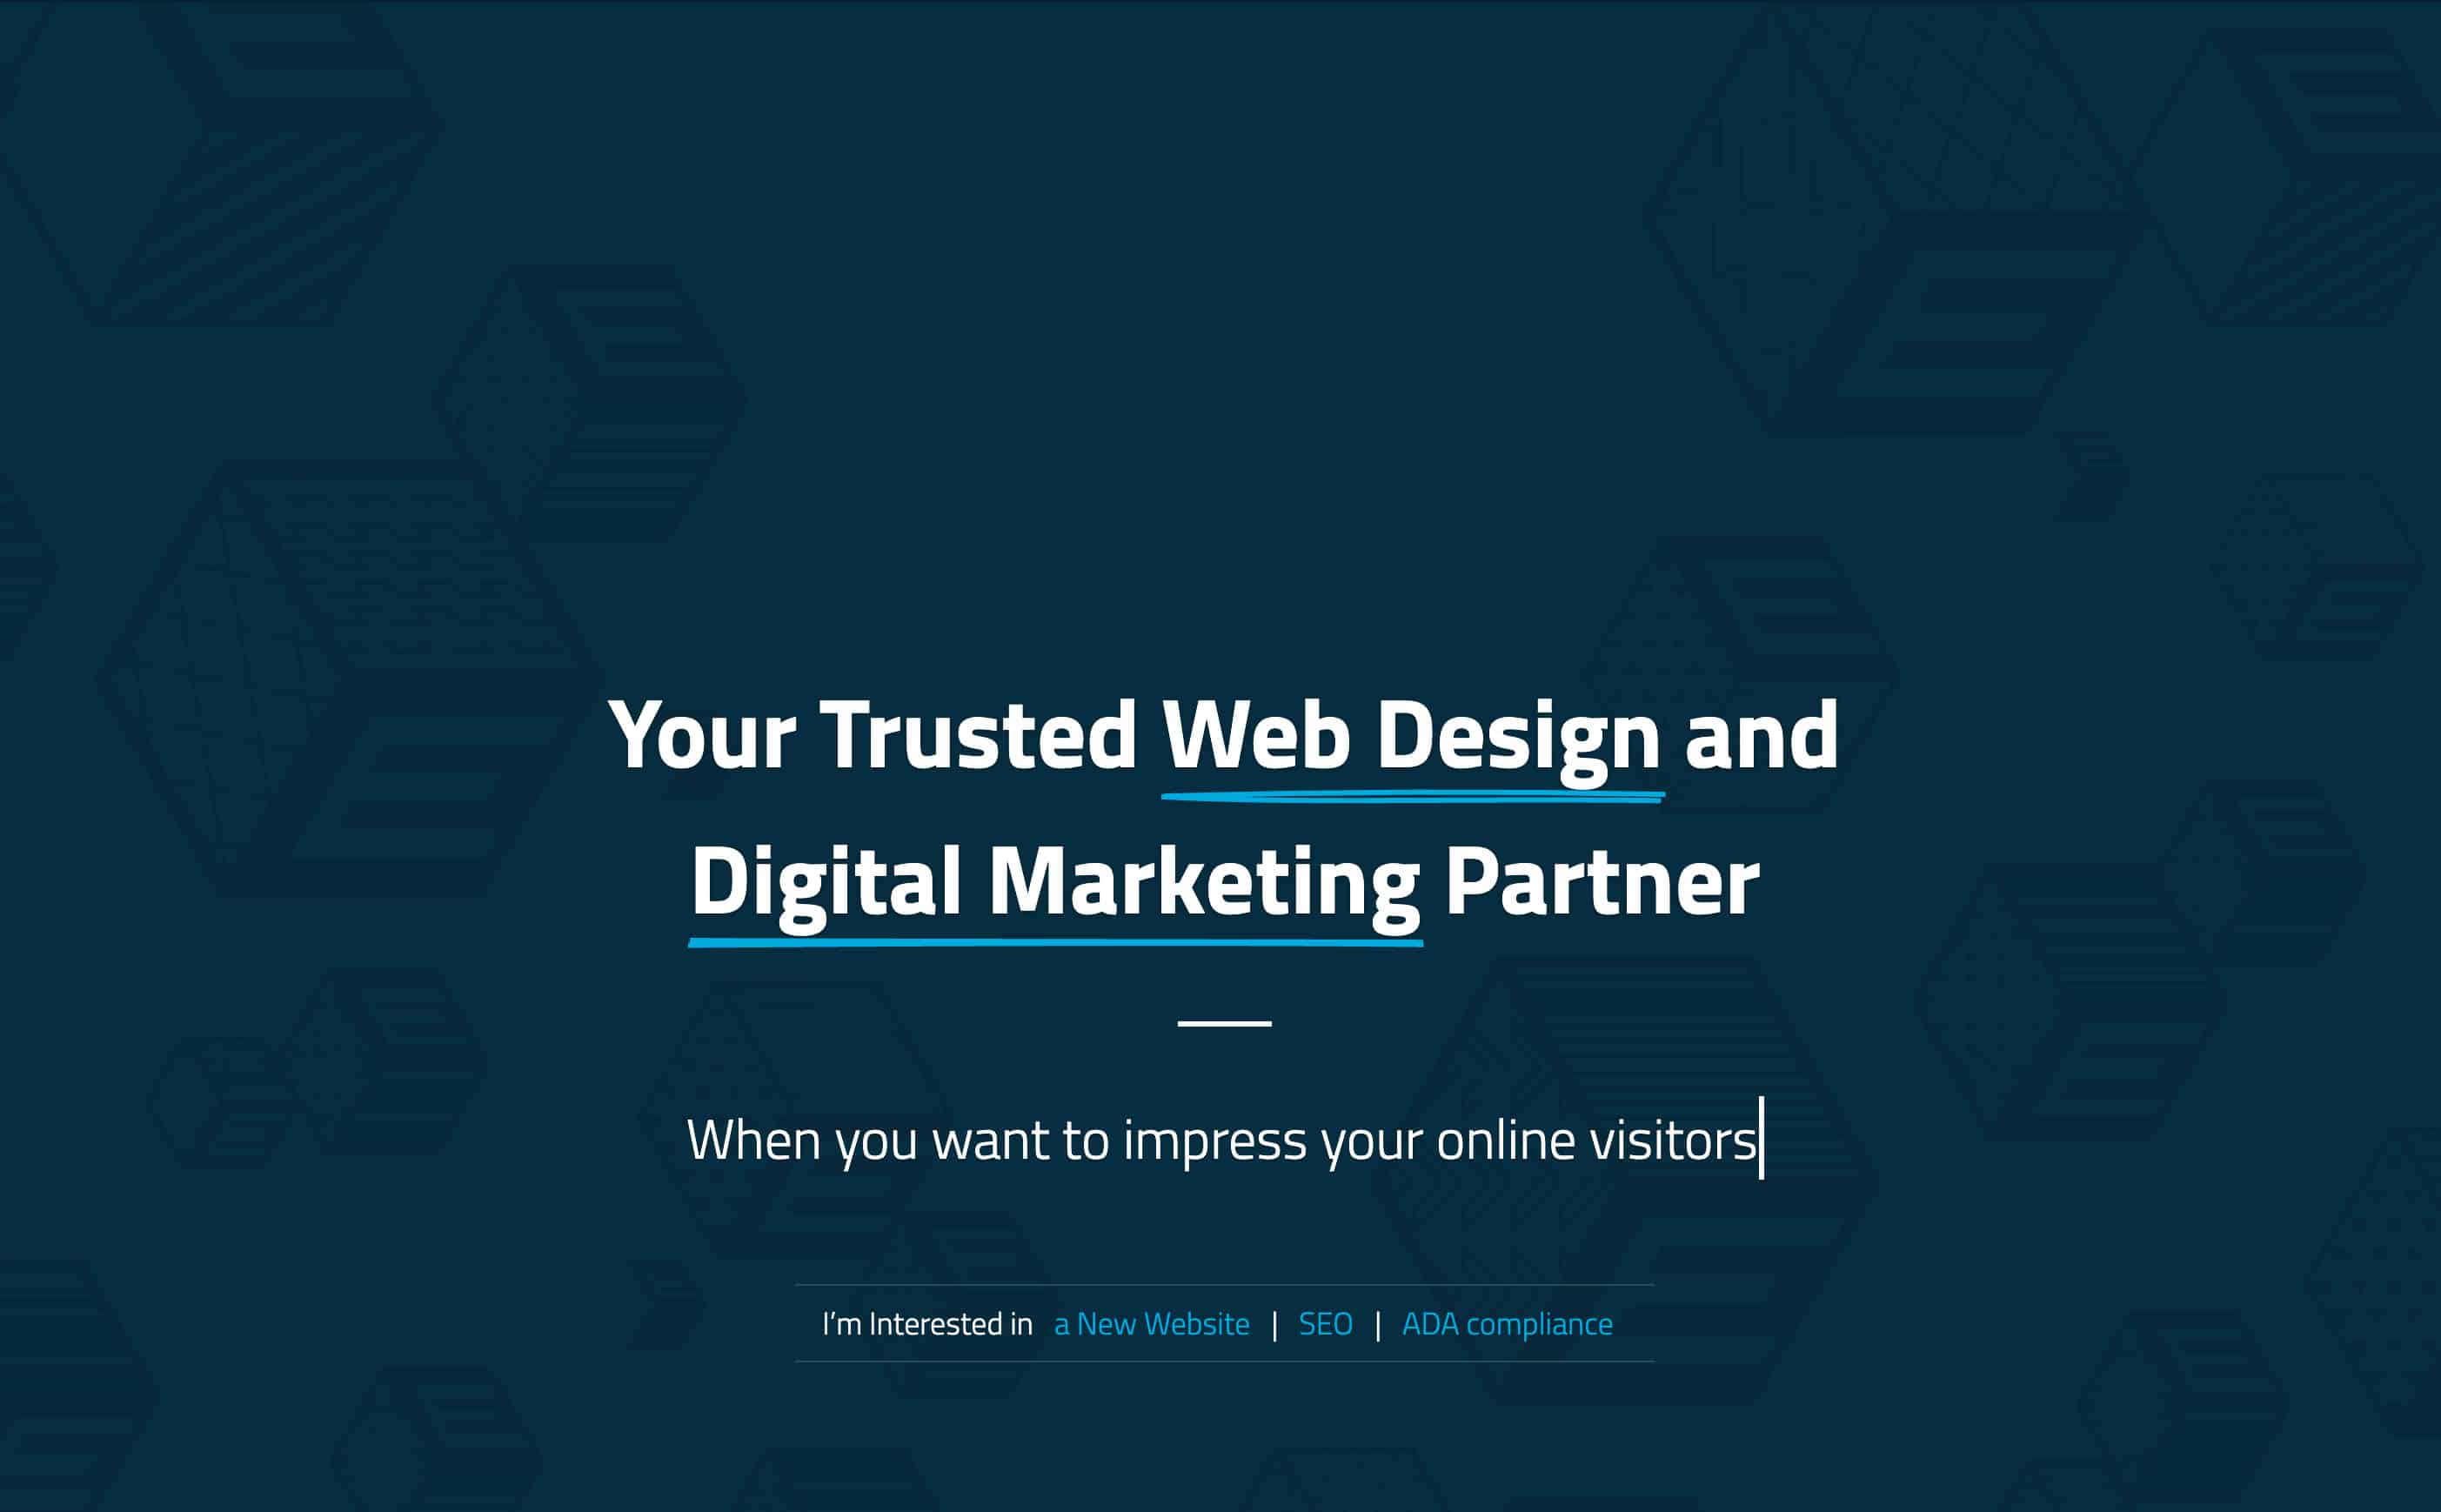 Partopia Digital Website Design